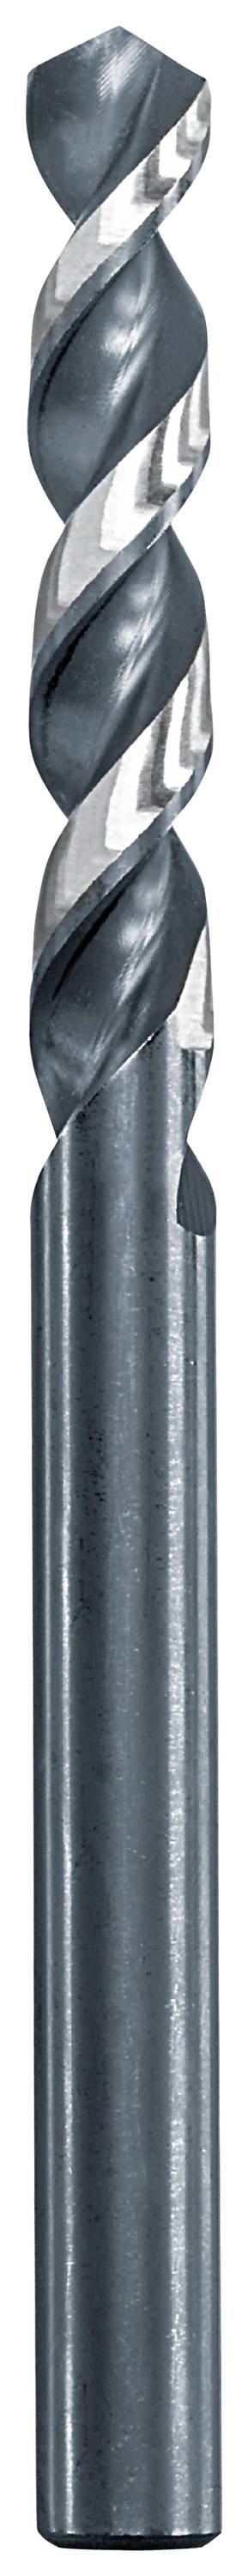 KWB 258610 Metall-Spiralbohrer 1 mm Gesamtlänge 34 mm 1 St.